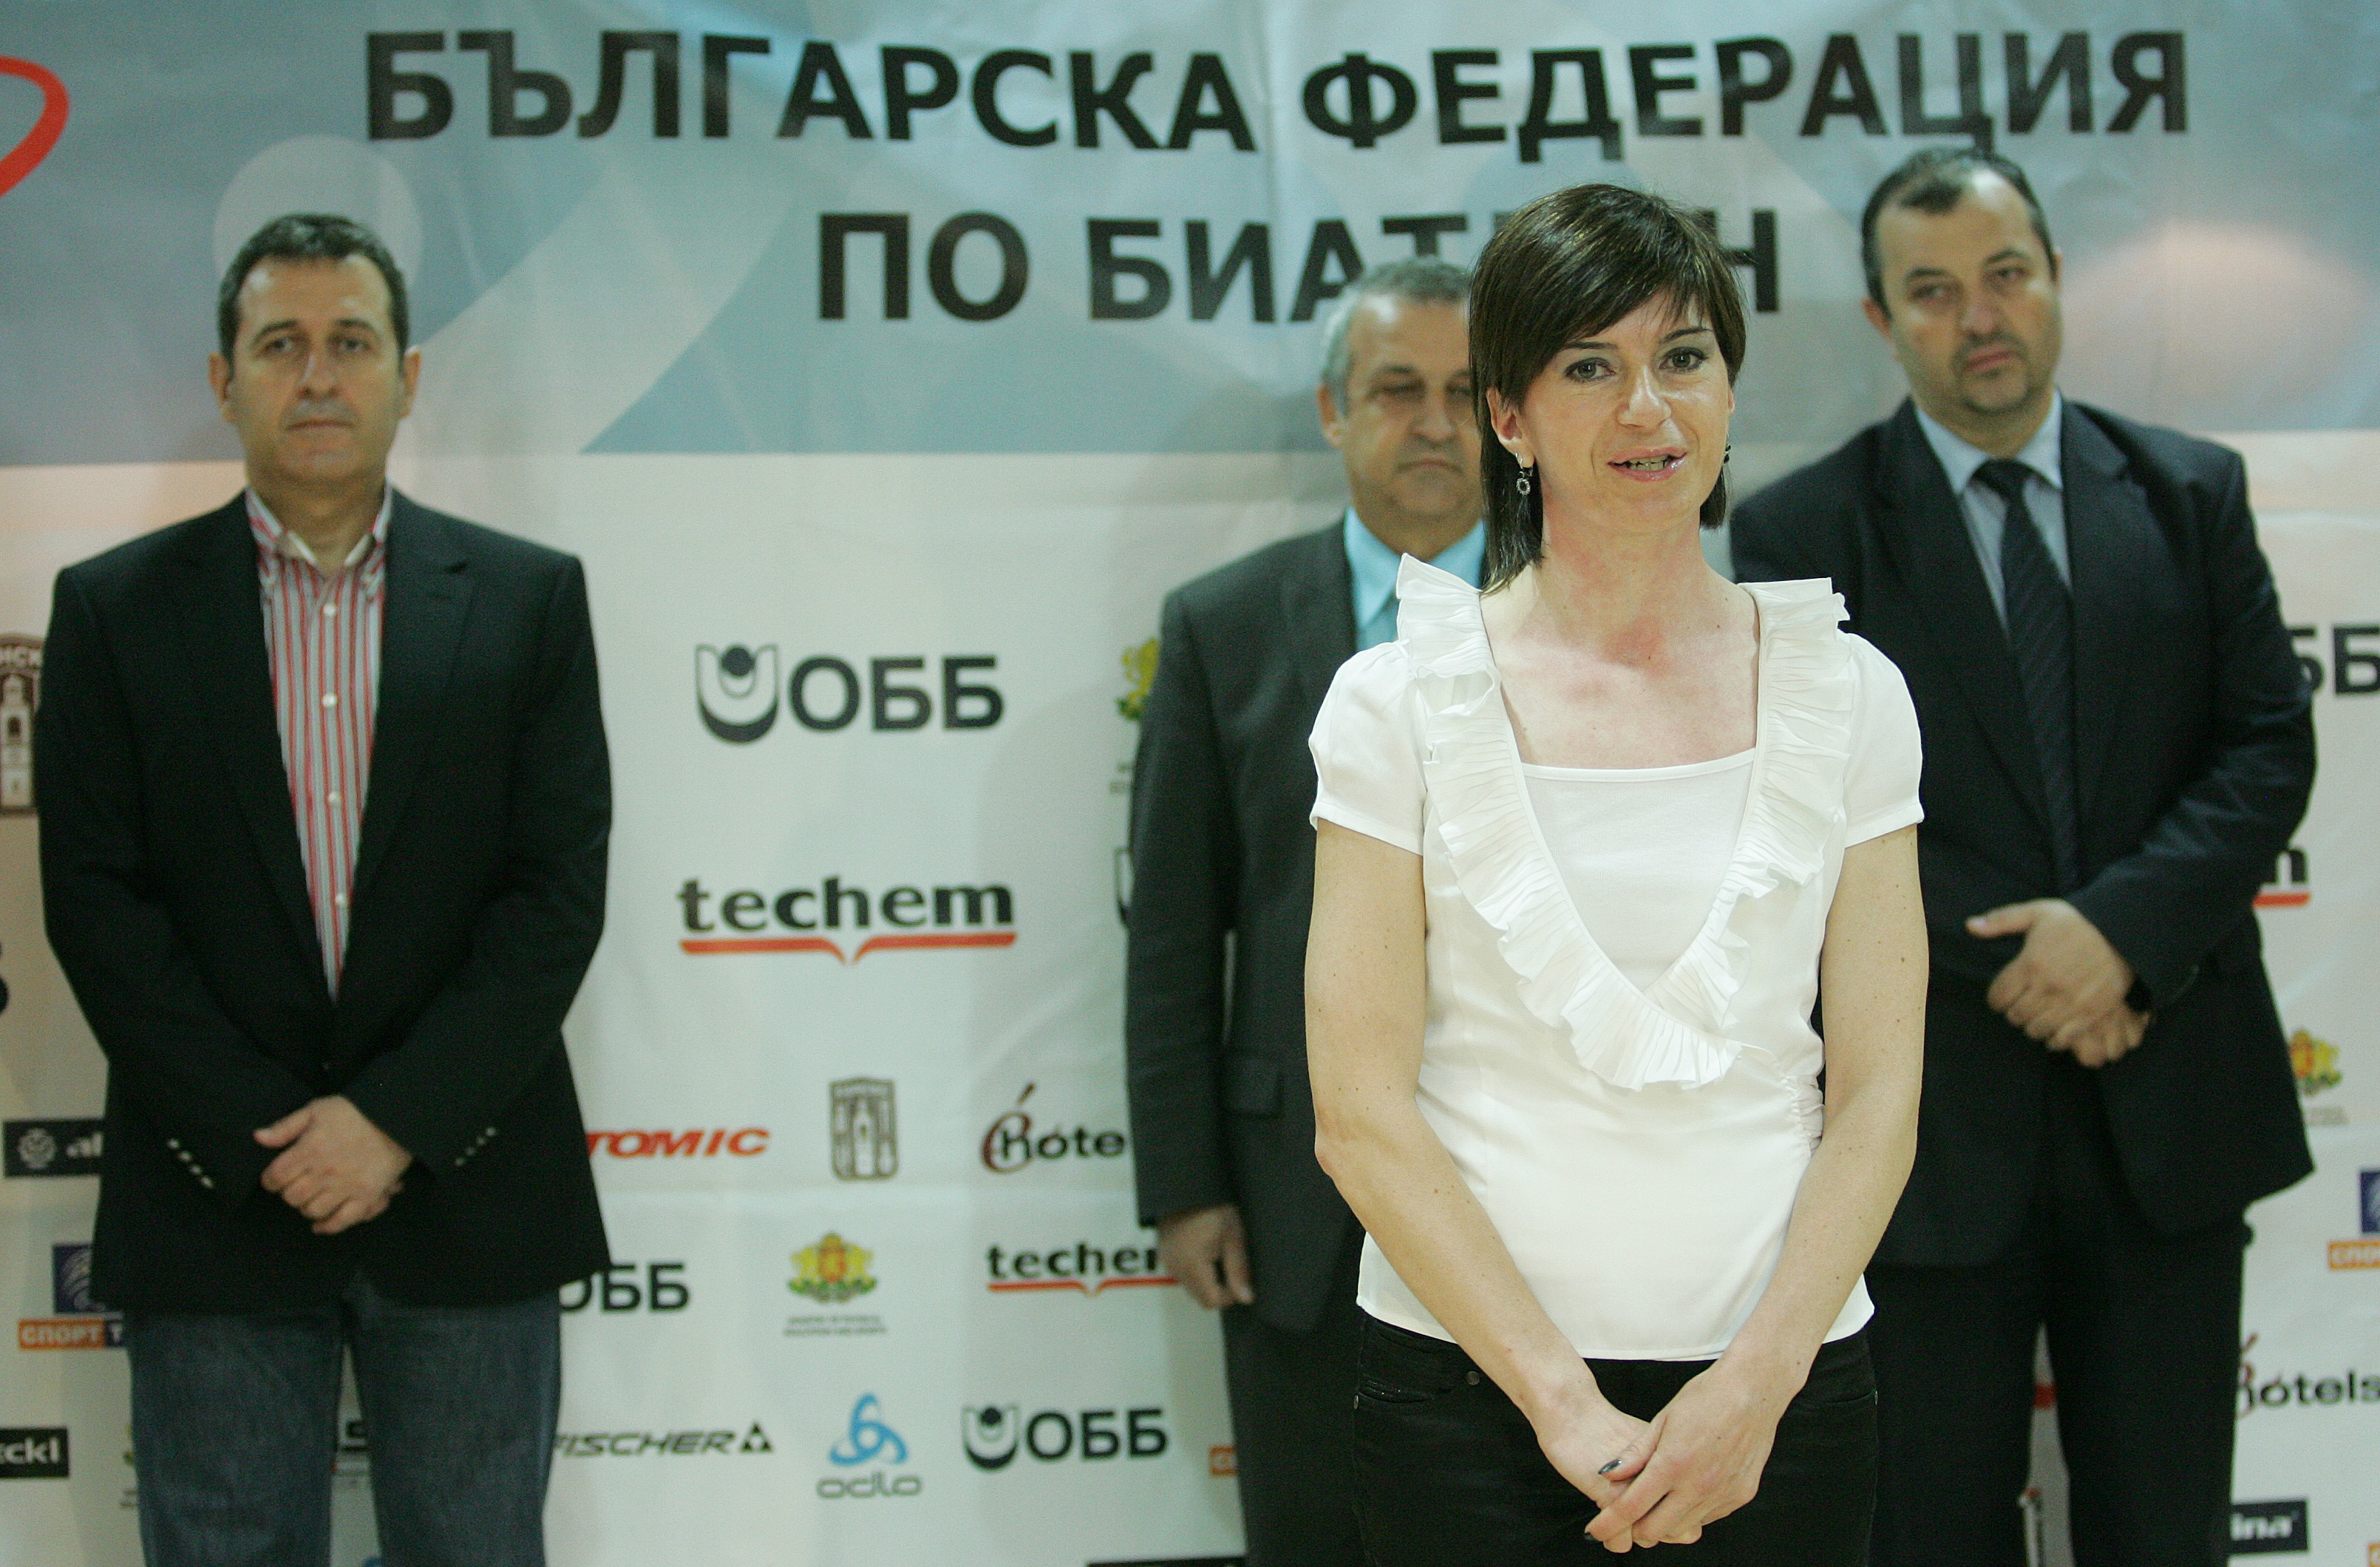 Екатерина Дафовска - председател на българската федерация по биатлон